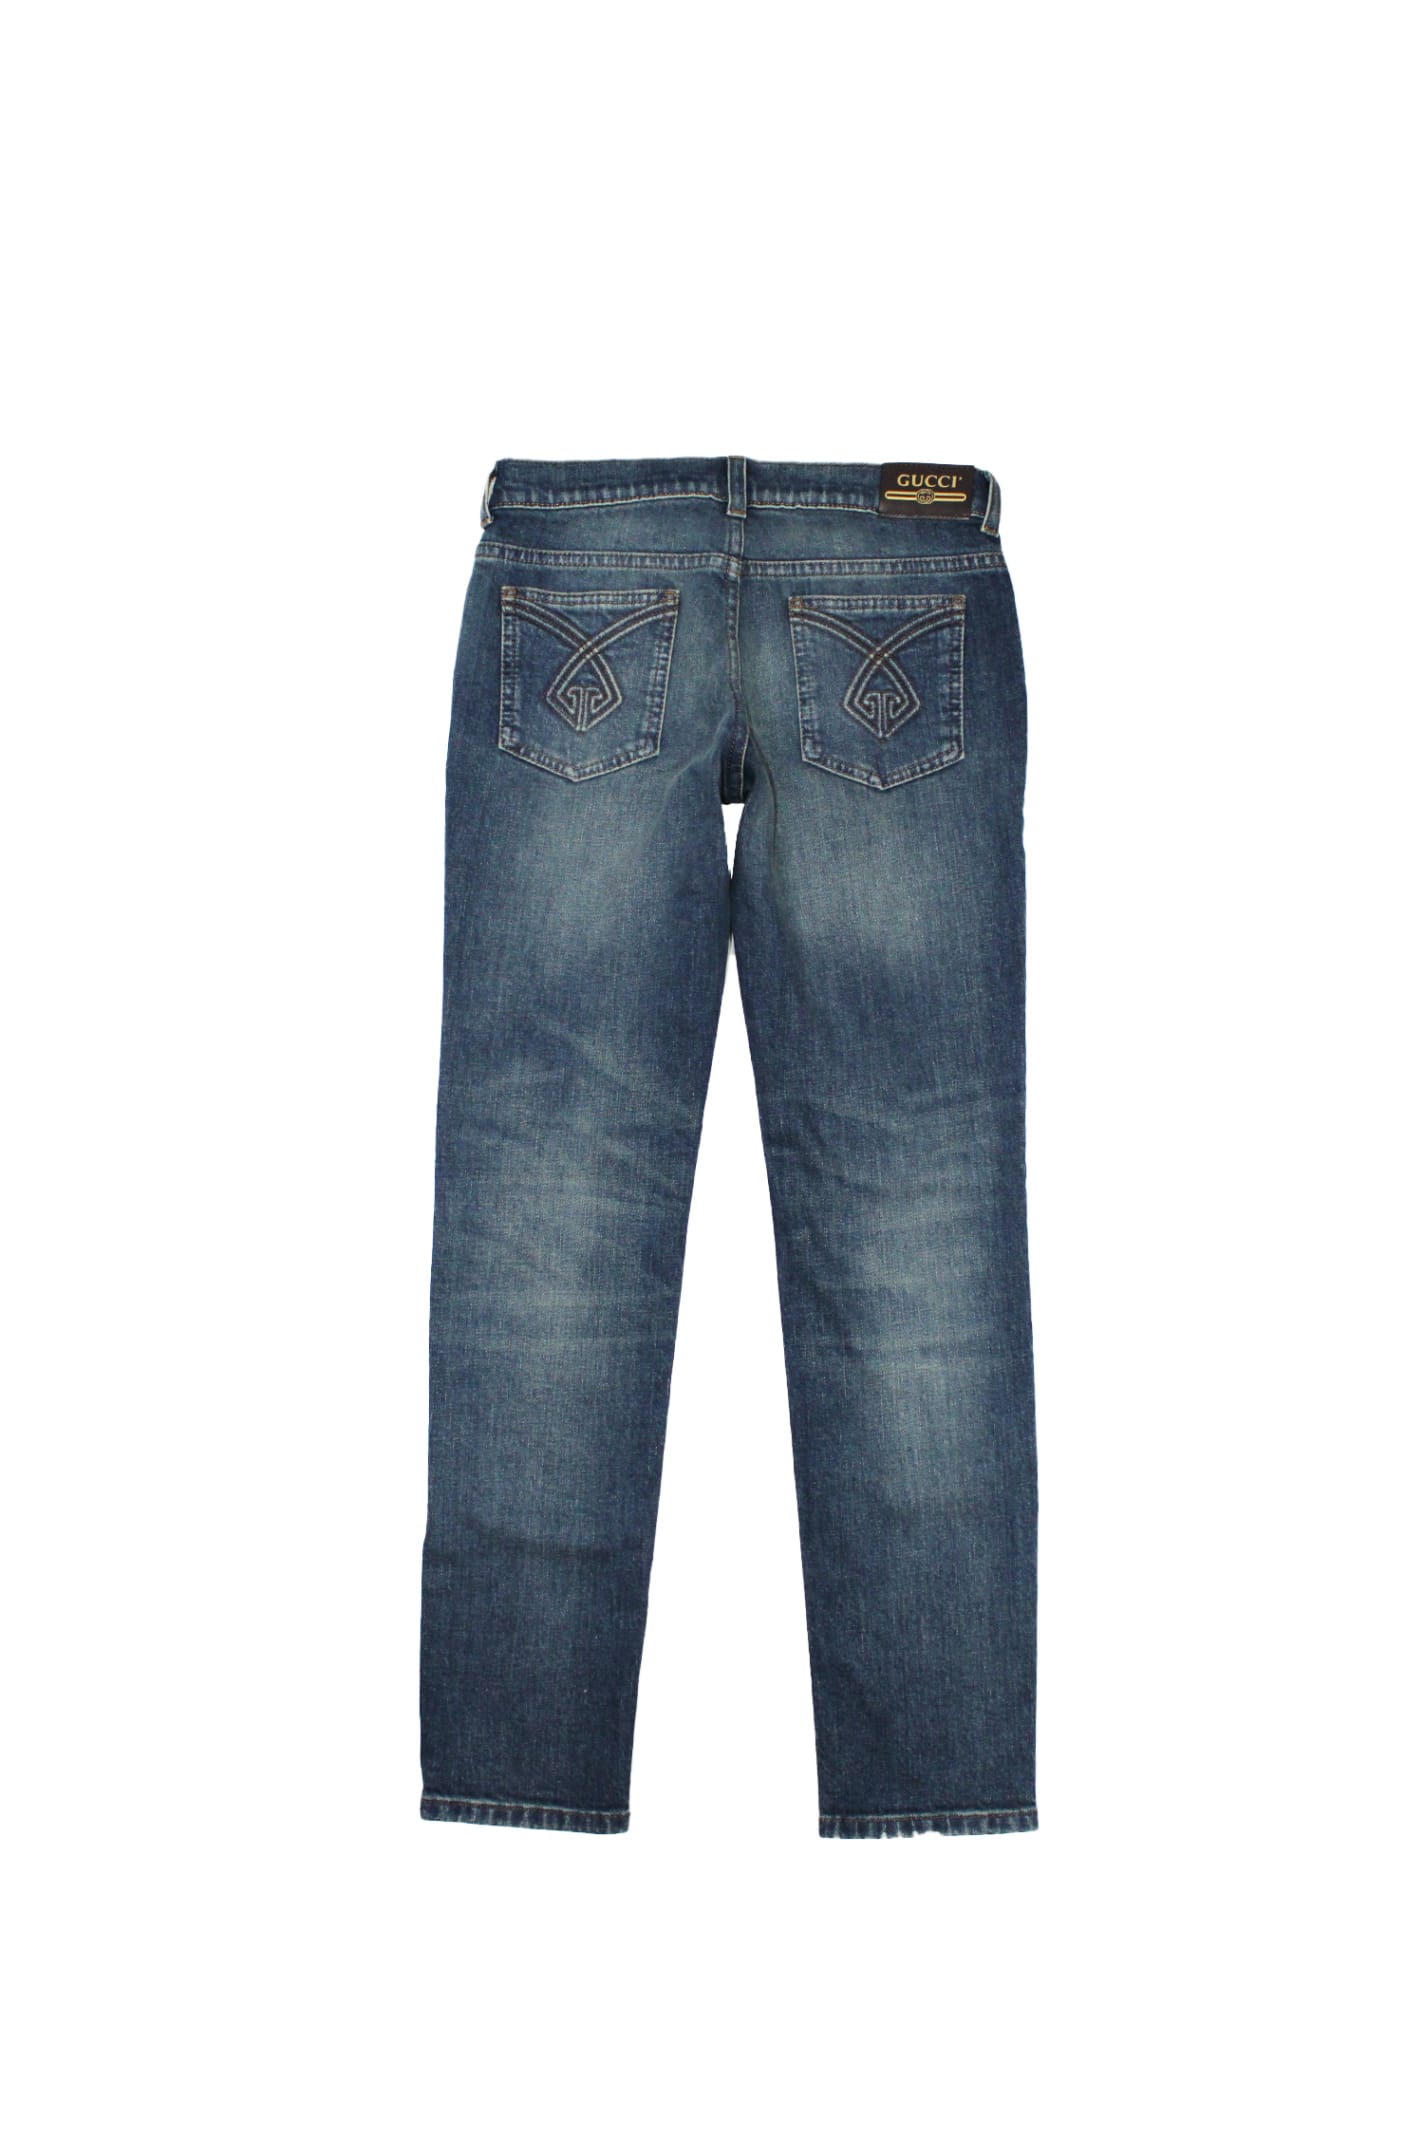 Shop Gucci Stretch Cotton Denim Jeans